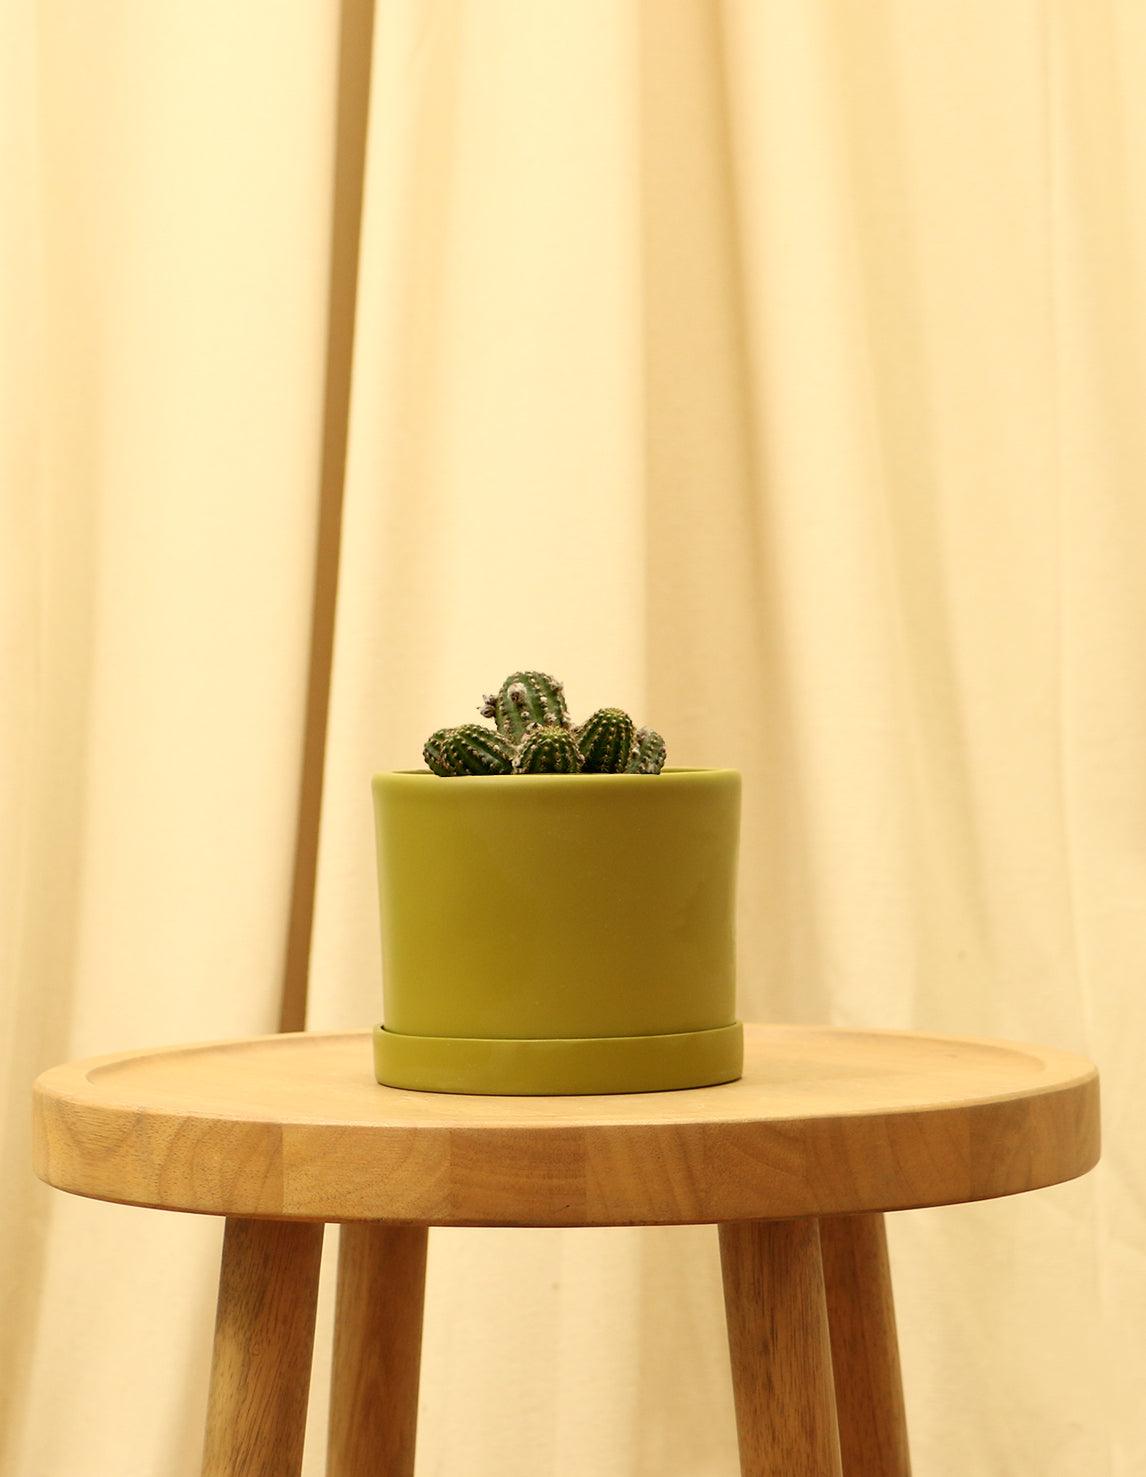 Small Rose Quartz Cactus in green pot.